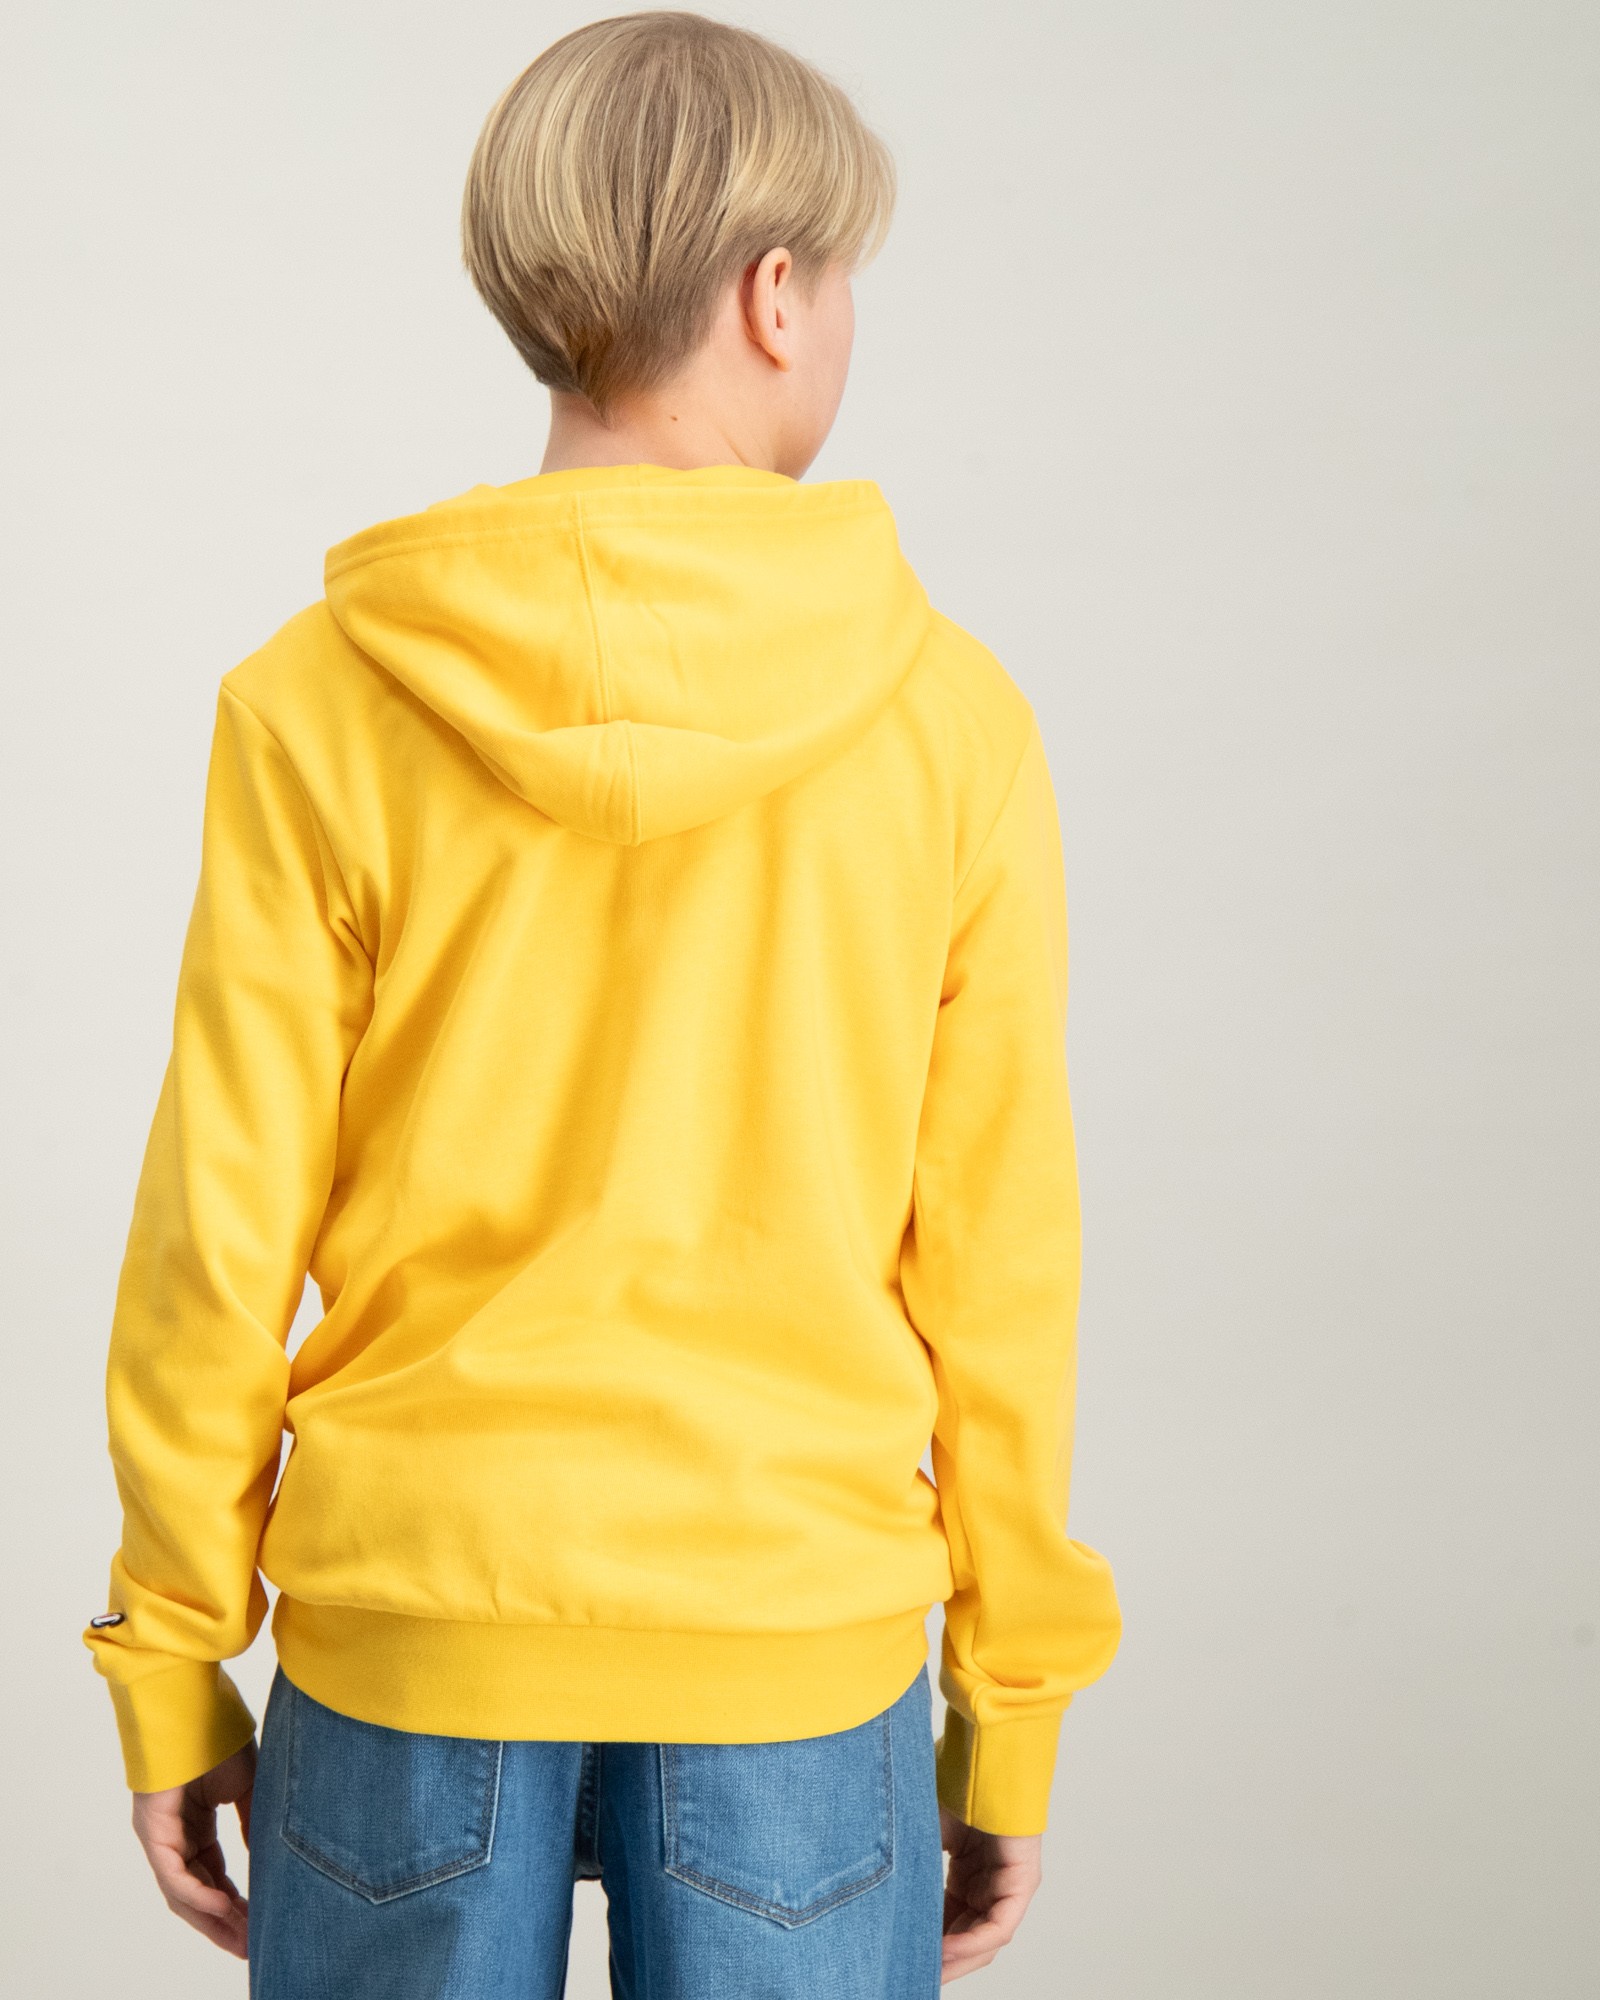 Jungen Store Kids Gelb | für Brand Sweatshirt Hooded